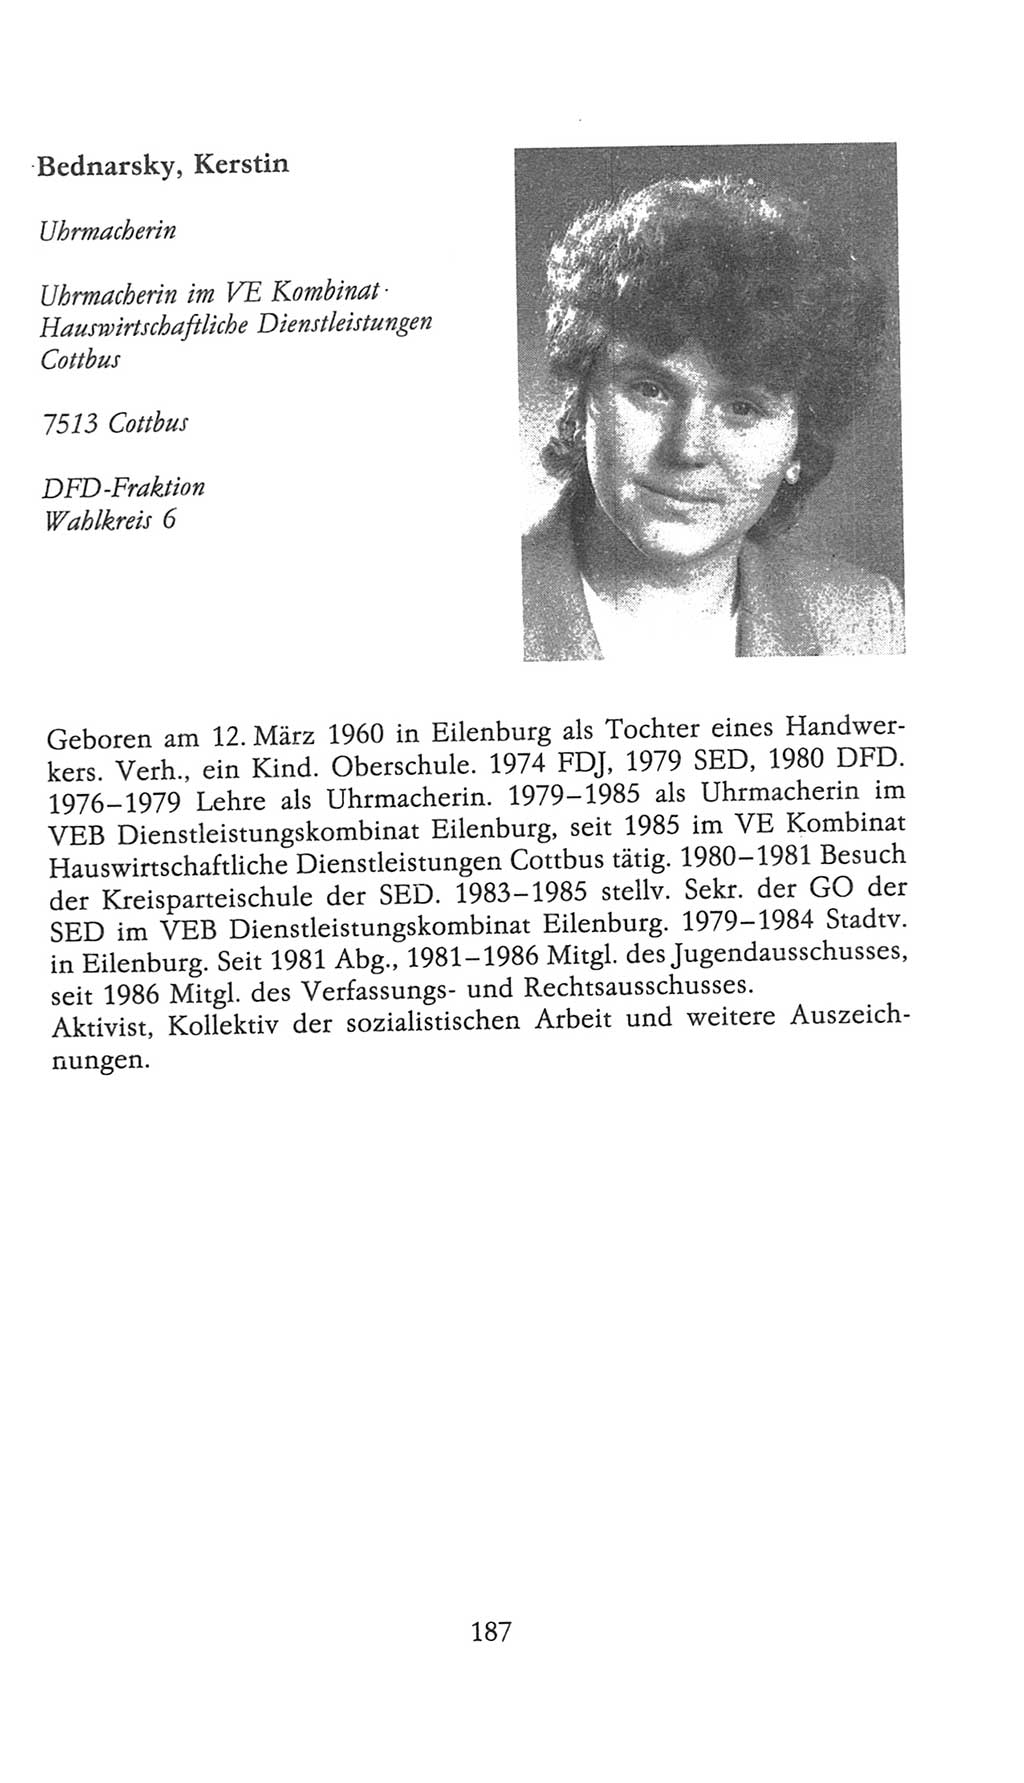 Volkskammer (VK) der Deutschen Demokratischen Republik (DDR), 9. Wahlperiode 1986-1990, Seite 187 (VK. DDR 9. WP. 1986-1990, S. 187)